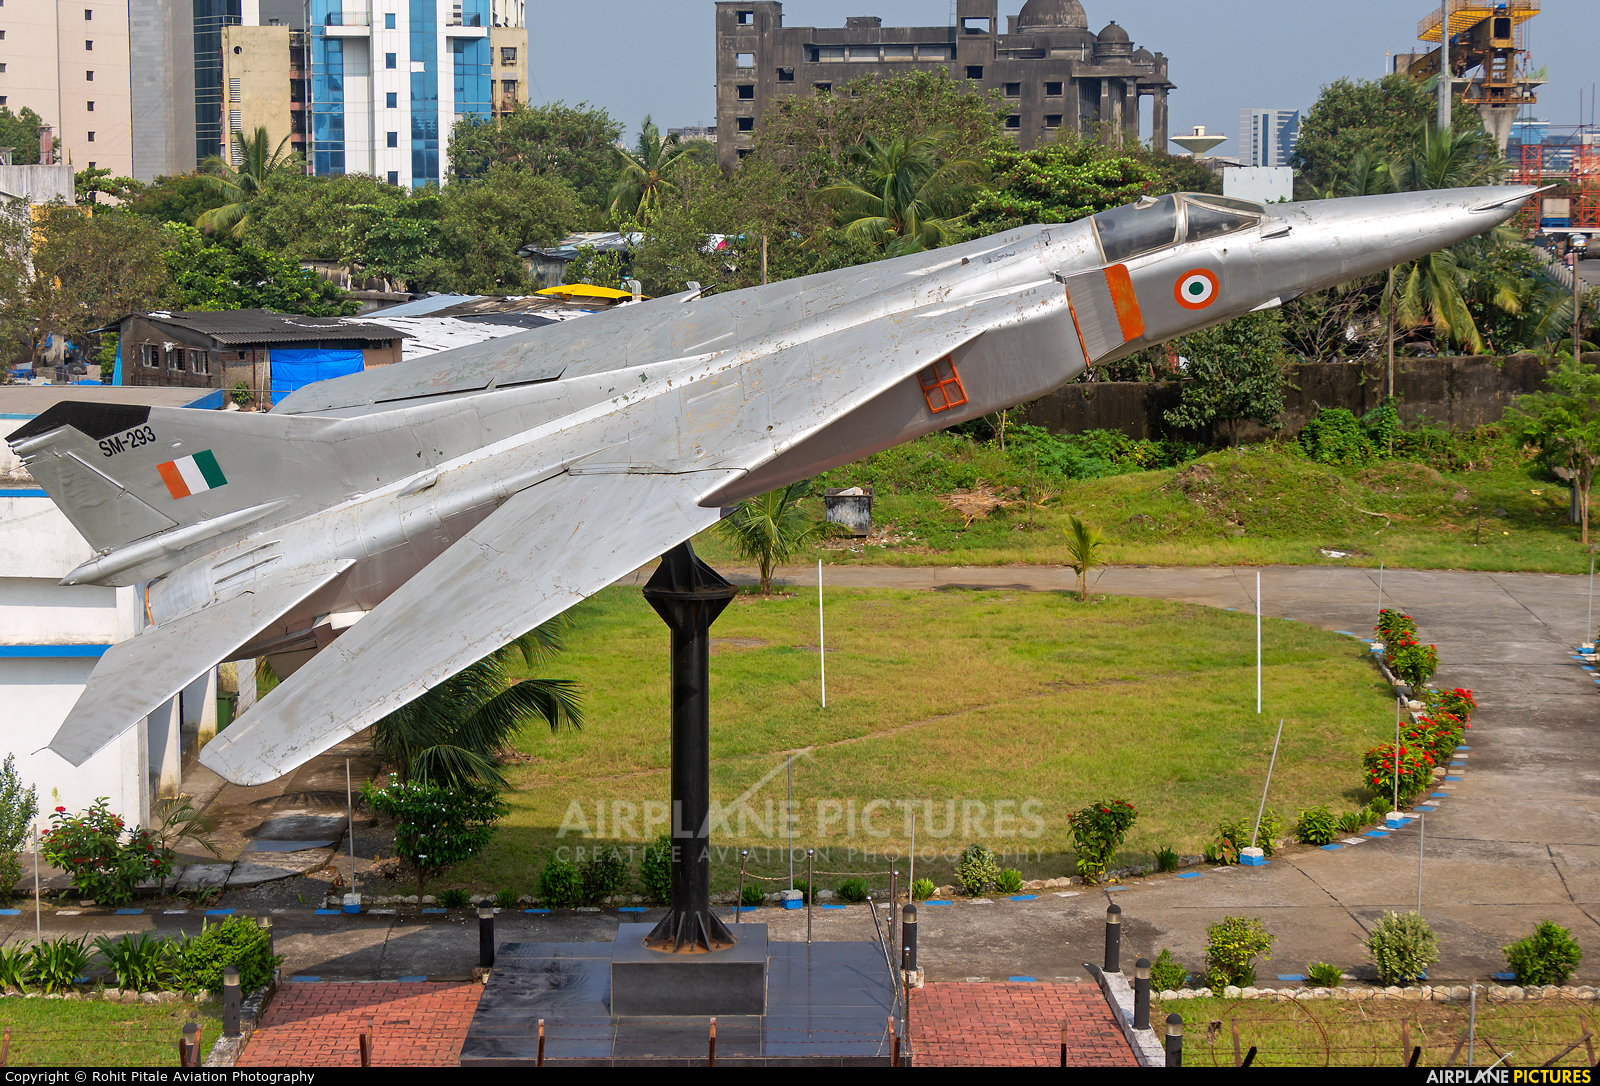 India - Air Force SM-293 aircraft at Off Airport - India